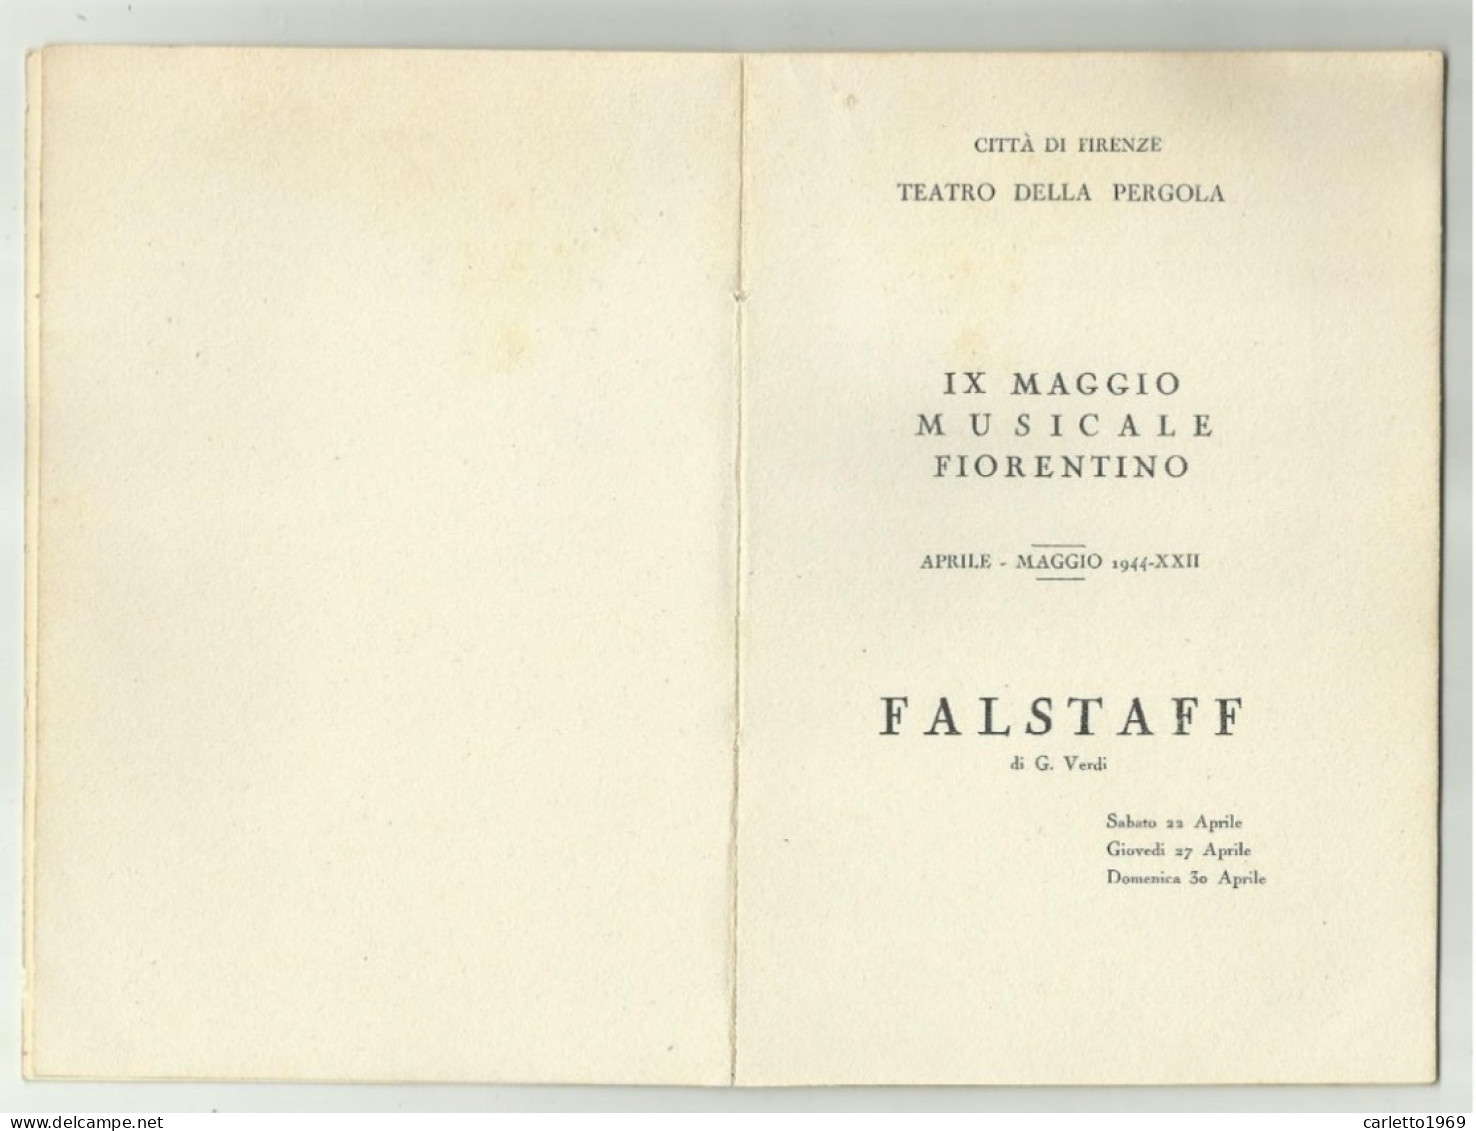 IX MAGGIO MUSICALE FIORENTINO 1944 LIBRETTO CITTA' DI FIRENZE CON TAGLIANDO POSTO POLTRONA 21 - Konzertkarten